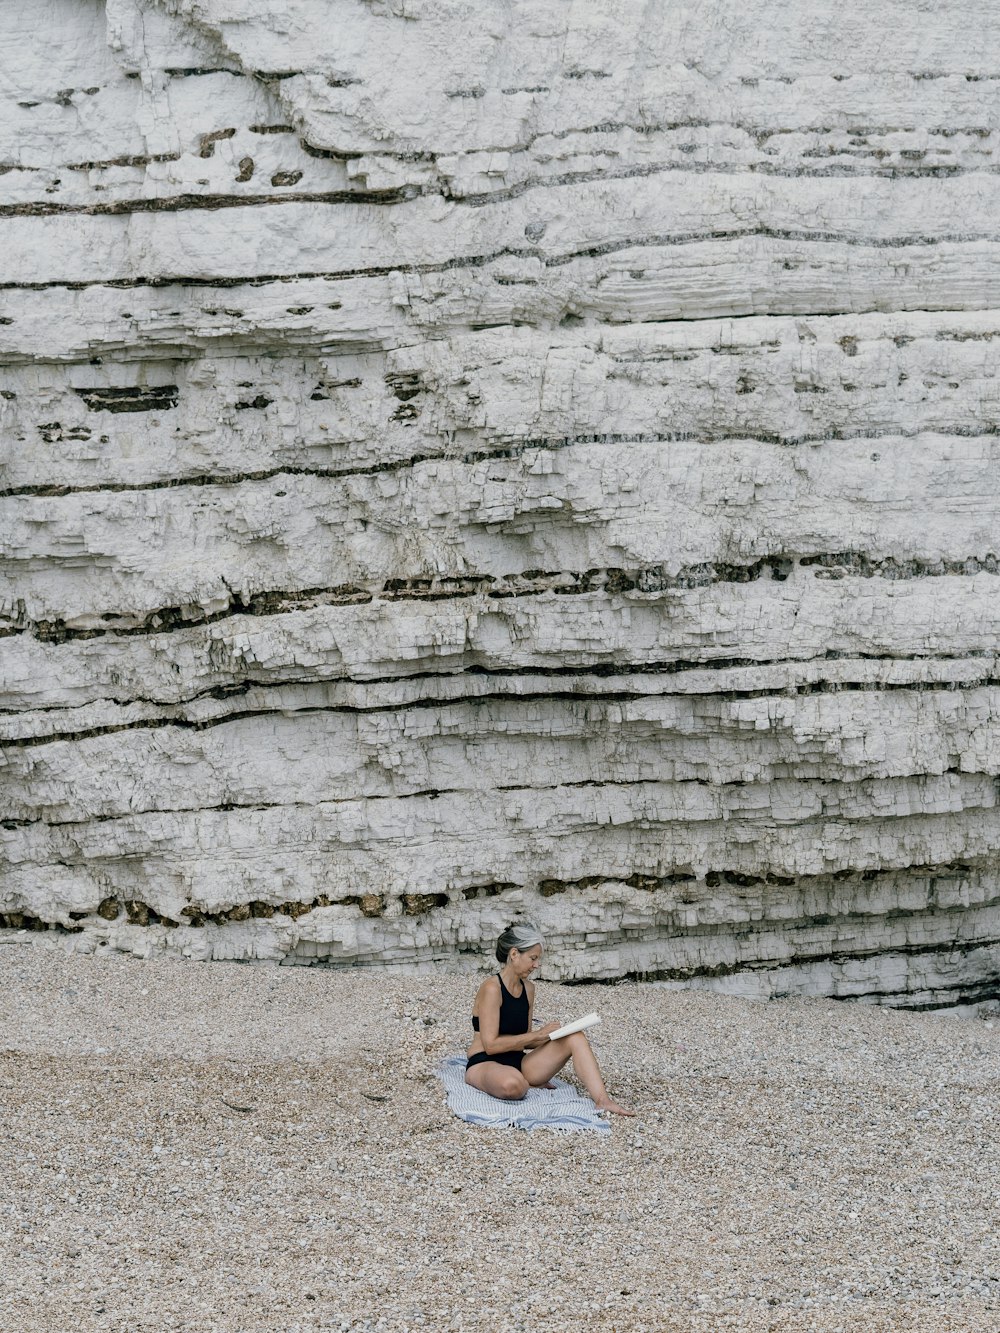 昼間に砂の上に座る白いビキニの女性